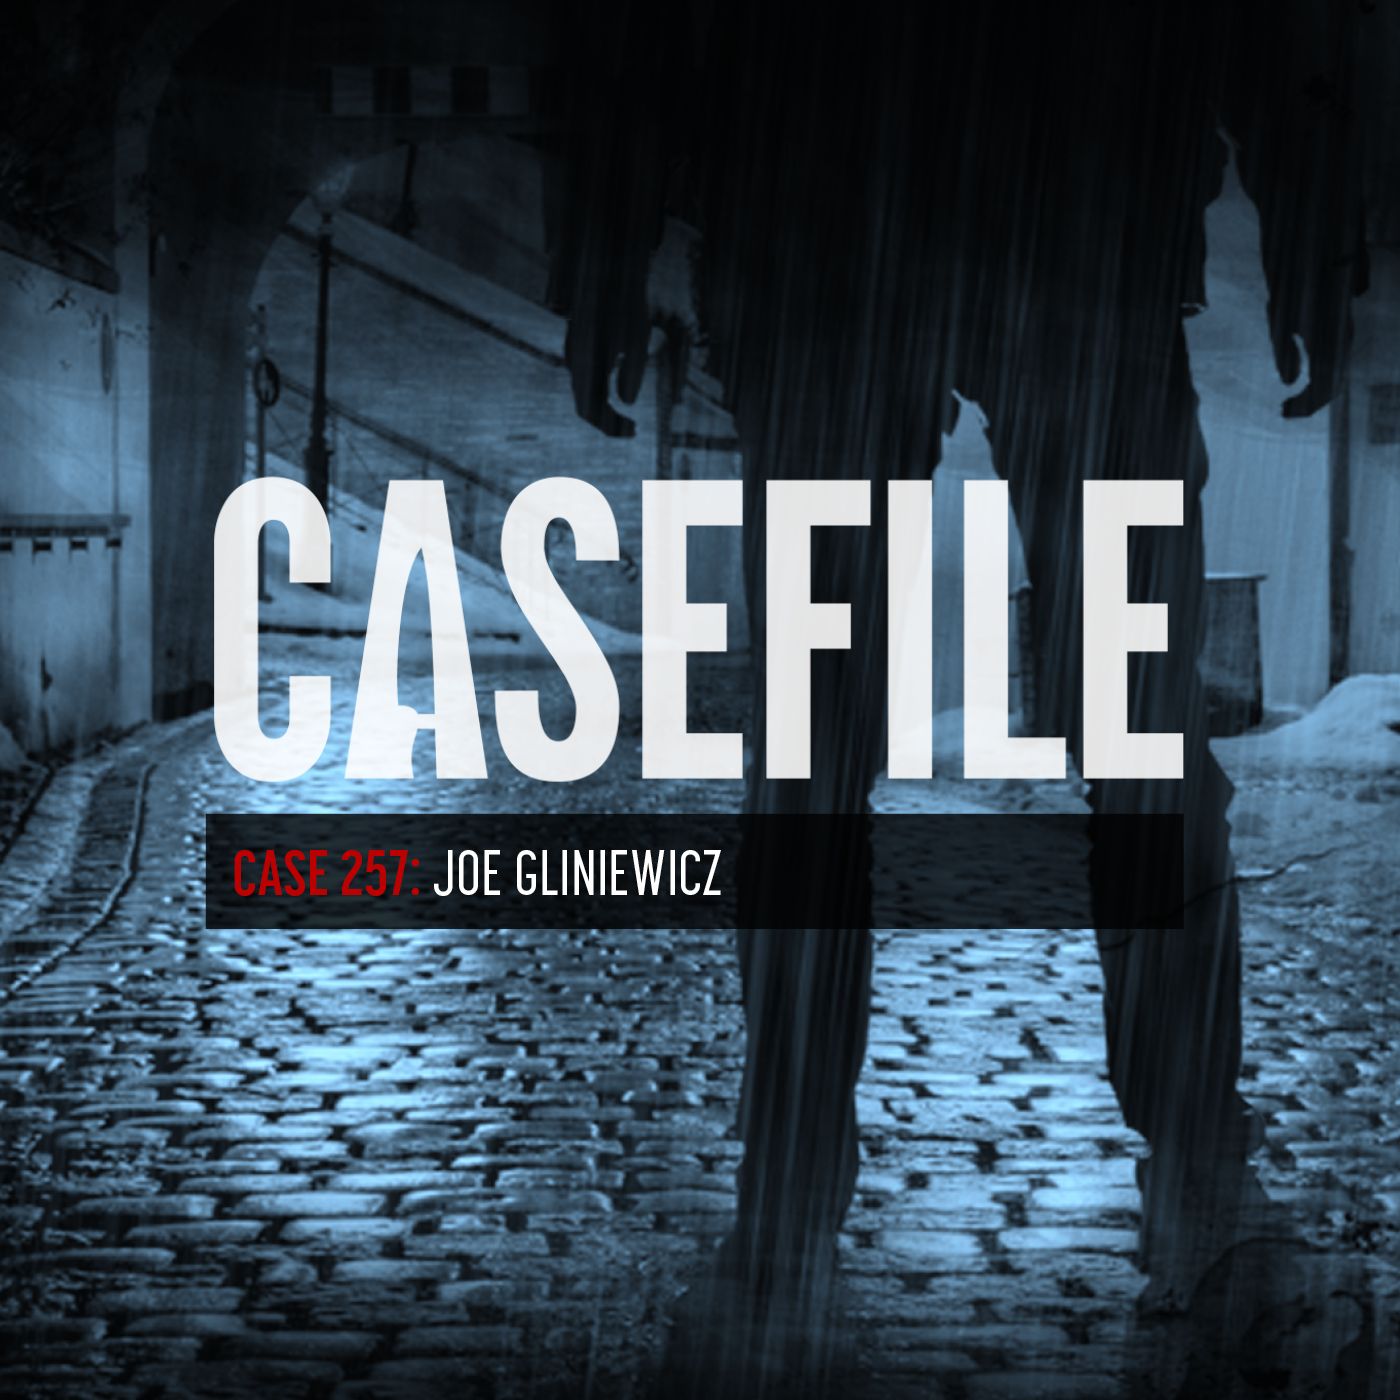 Case 257: Joe Gliniewicz